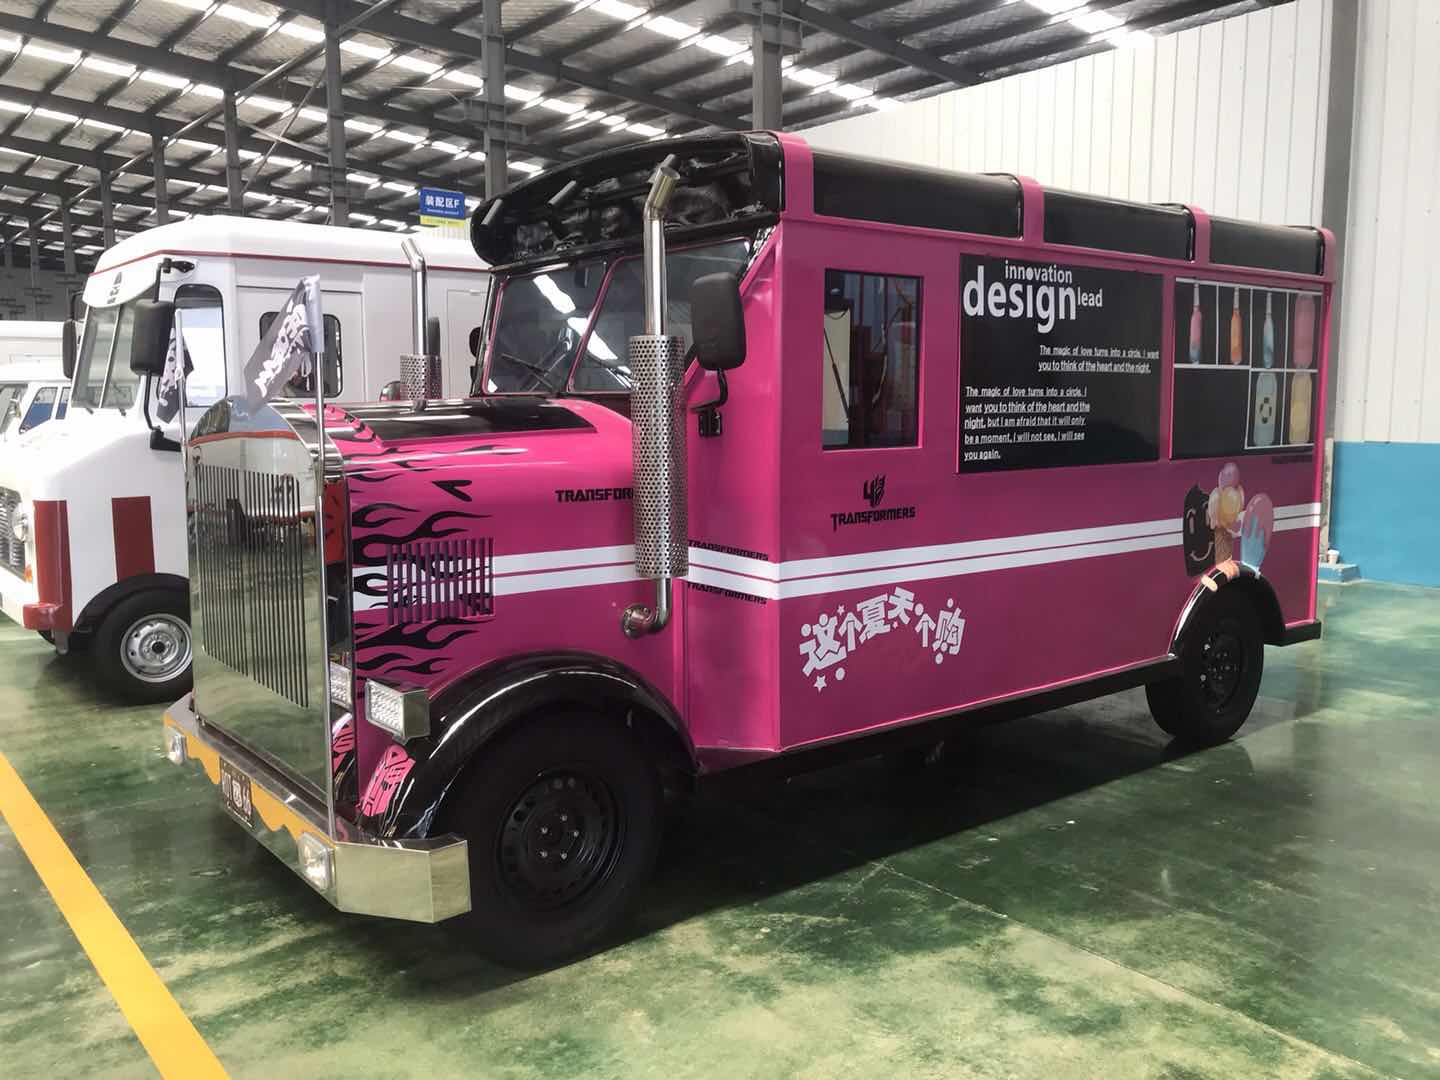 Transformers Food Truck